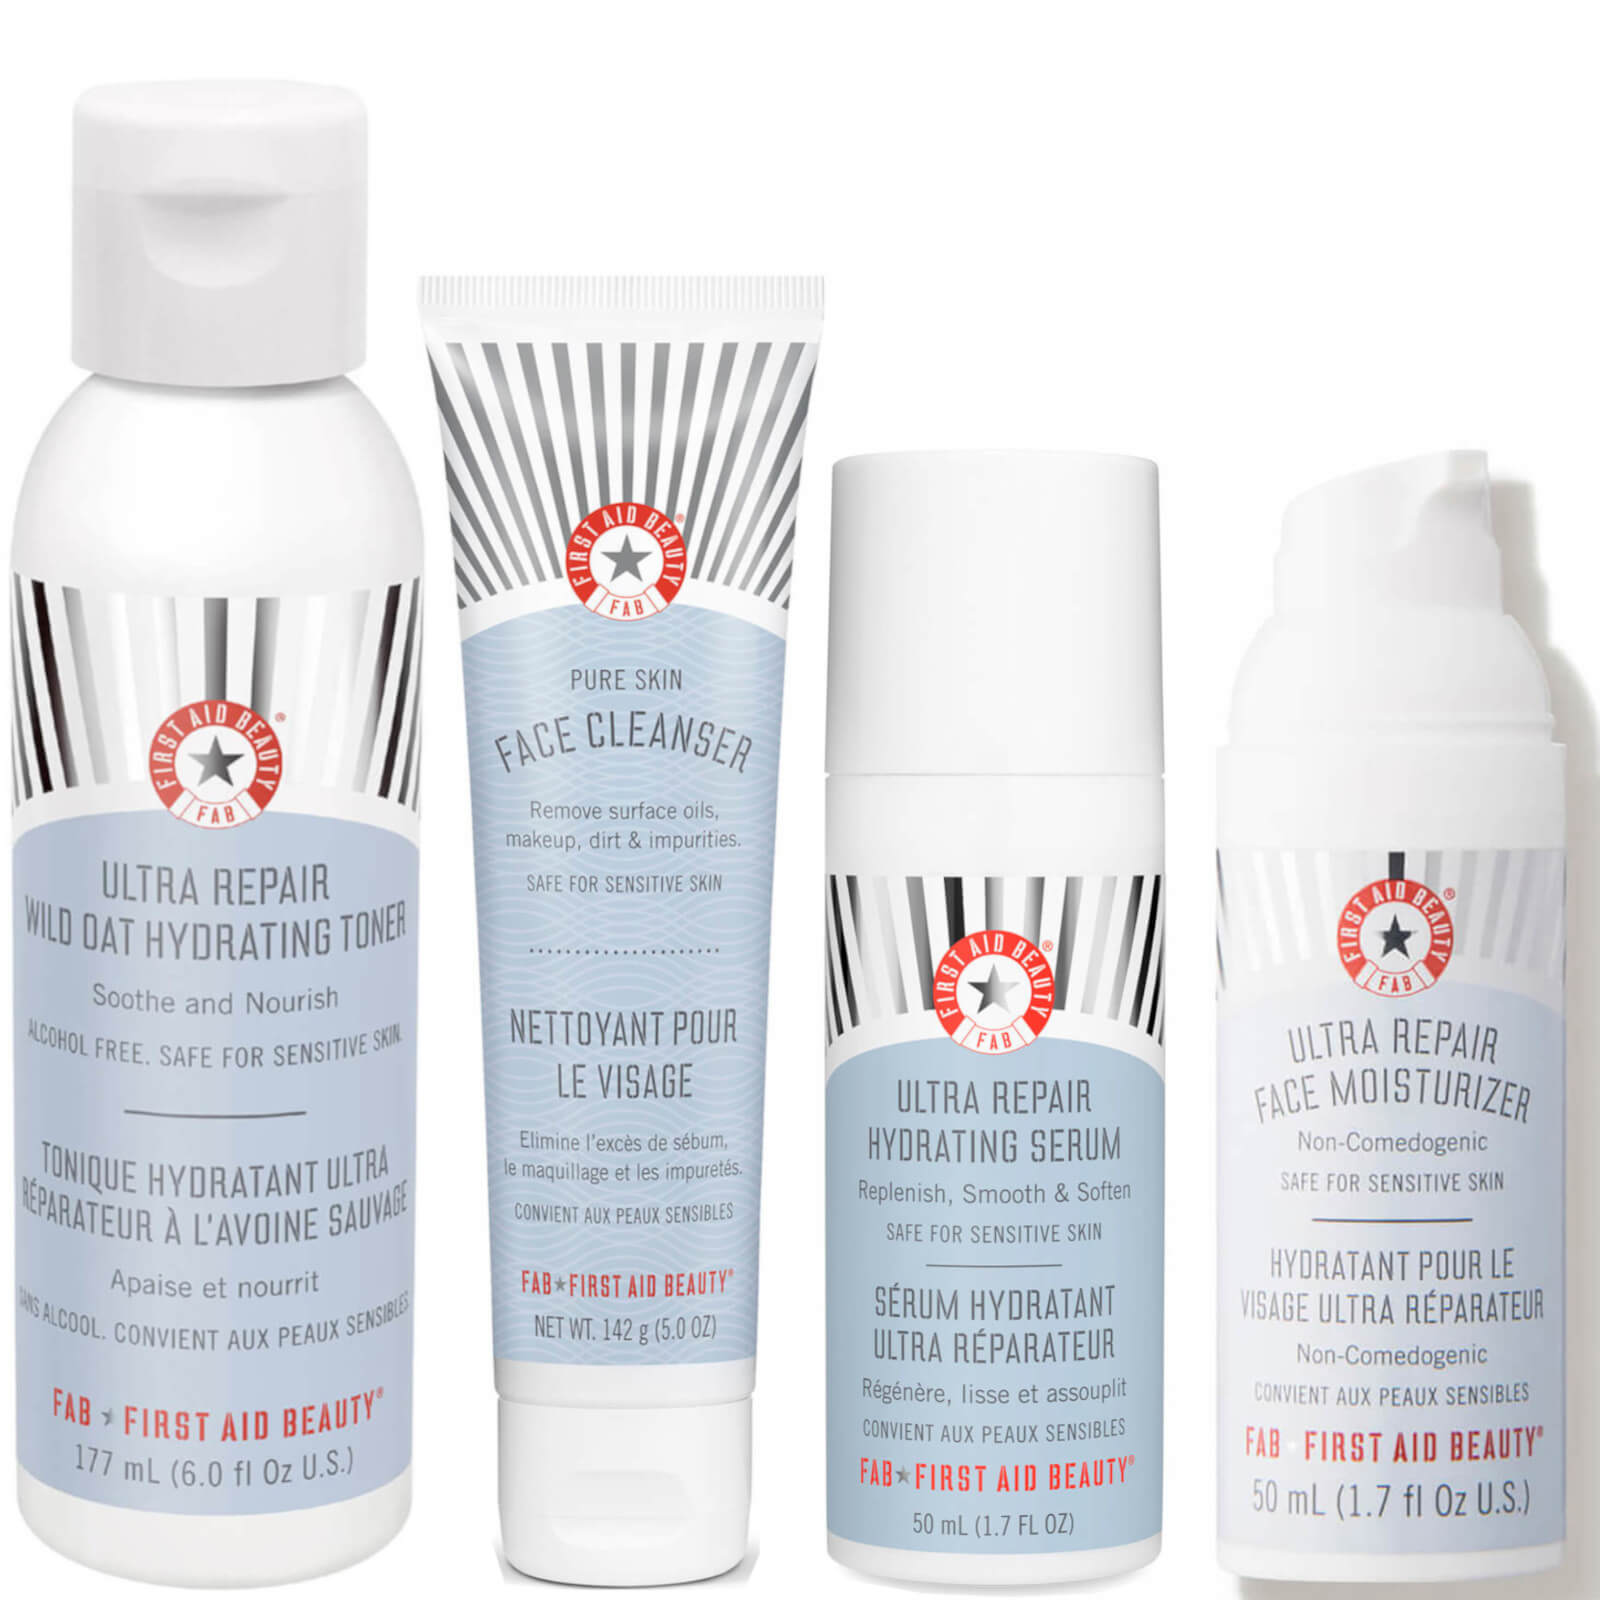 First Aid Beauty Sensitive Skin Essentials lookfantastic.com imagine